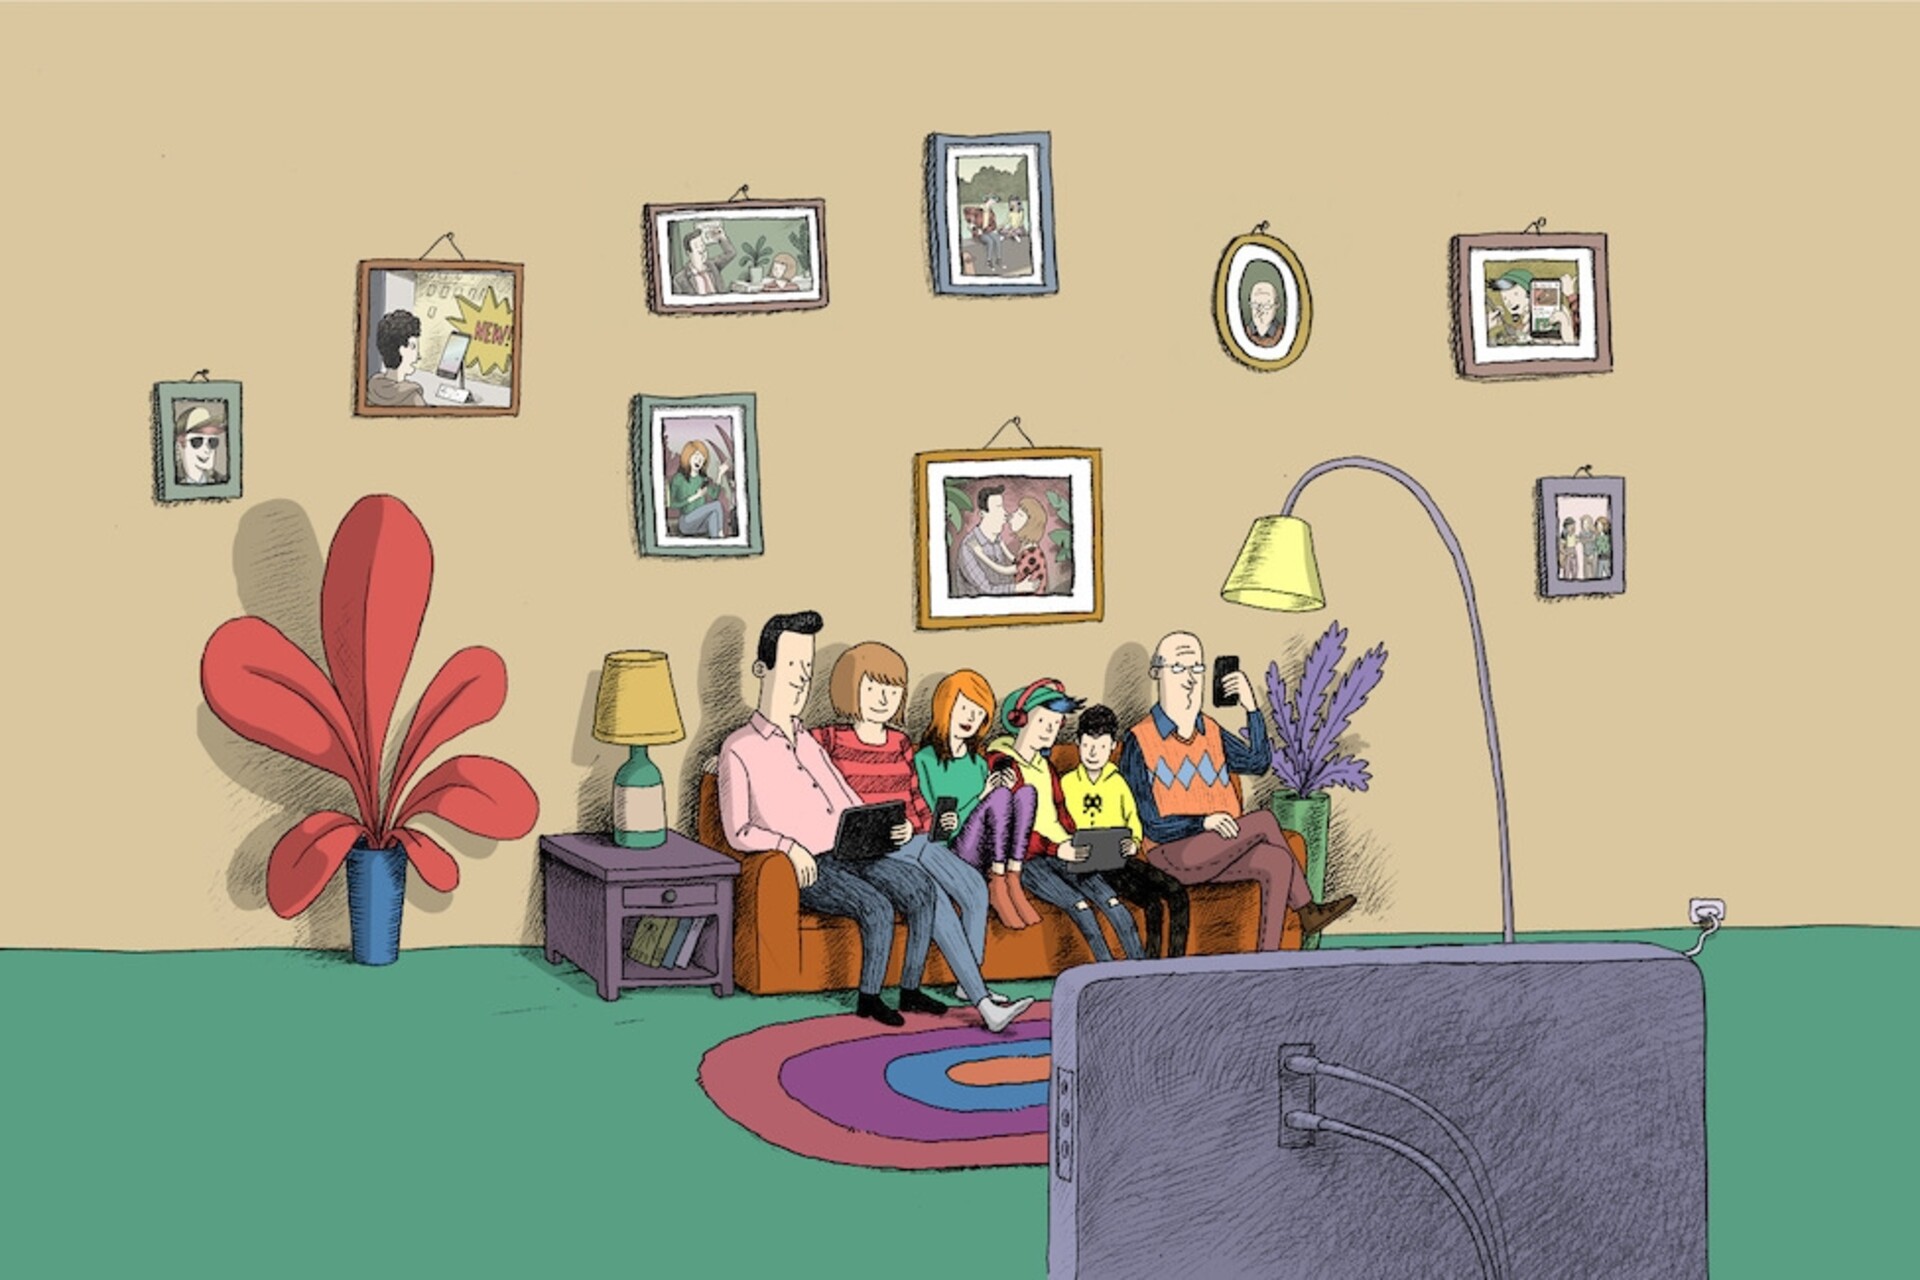 काल्पनिक वेबस्टर परिवार के कार्टून स्विस आबादी को परस्पर जुड़ी दुनिया में सावधानी से चलने के लिए प्रोत्साहित करते हैं